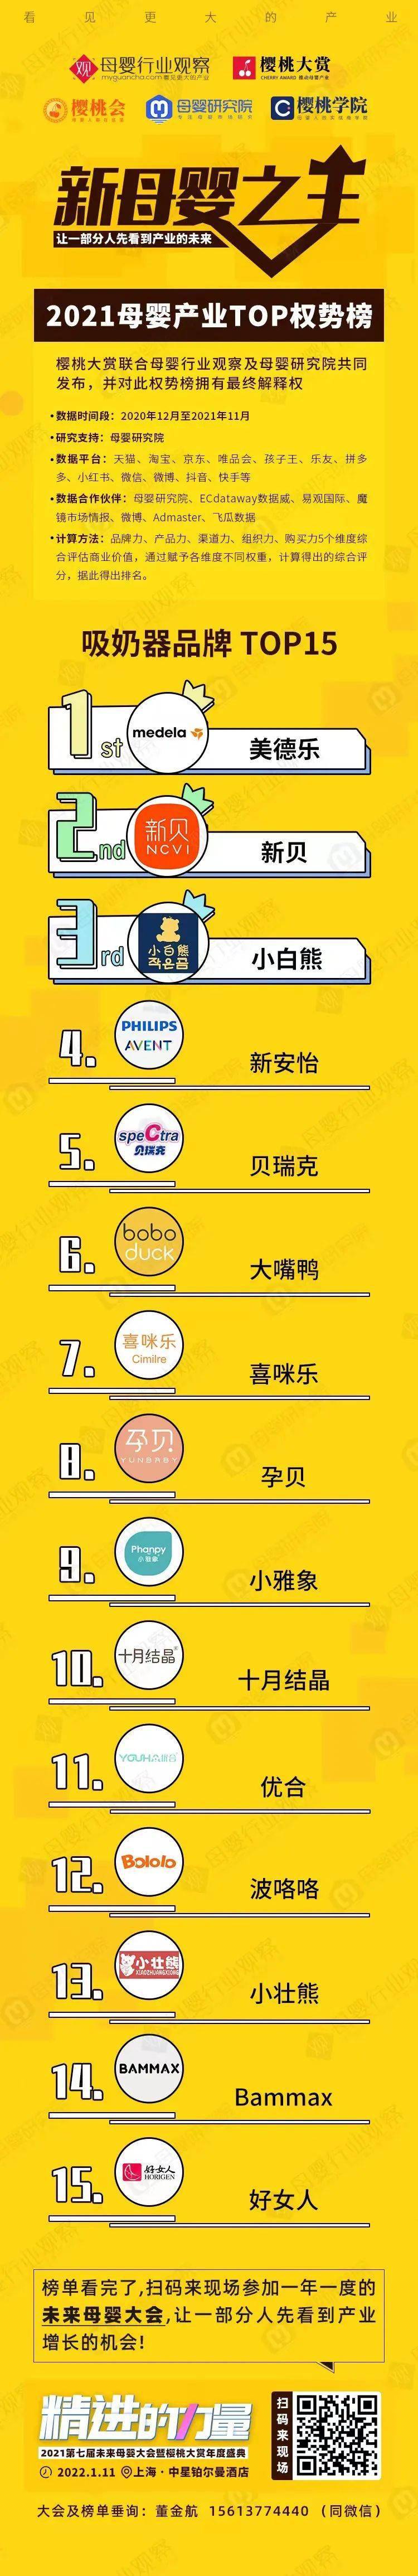 吸奶器品牌排行榜_吸奶器品牌TOP15权势榜发布,消费新势力来袭